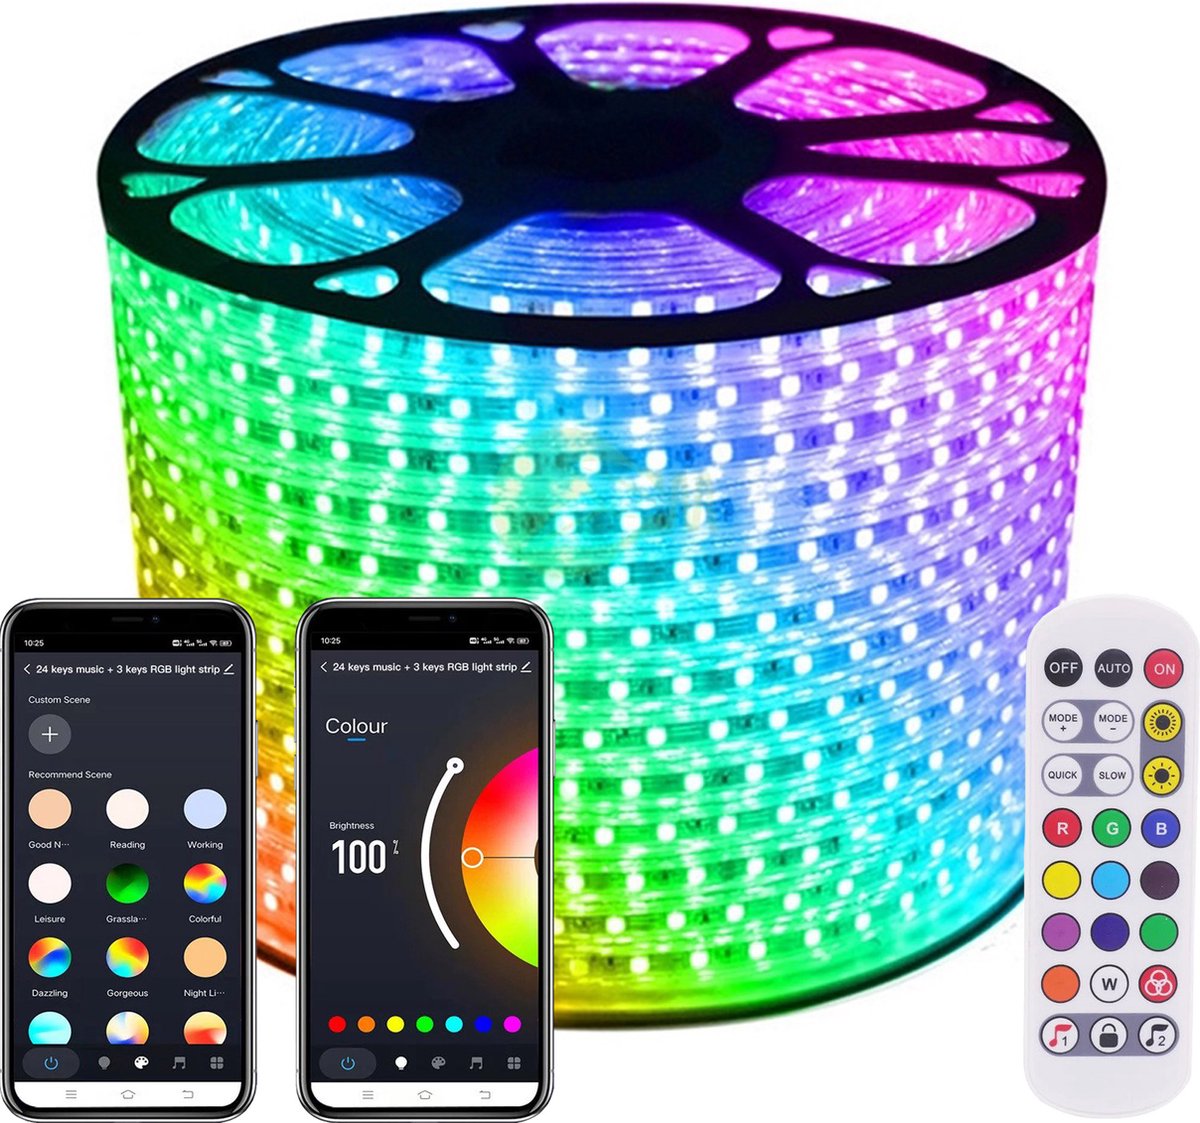 LED Strip RGB - 50 Meter aan één stuk - 16Miljoen kleuren - Met Wi-Fi App + IR 24 knops afstandsbediening - Smarthome - Google Home/Amazon Alexa - Waterdicht - Makkelijke mobiele App voor bedienen inclusief afstandsbediening - iOS en Android